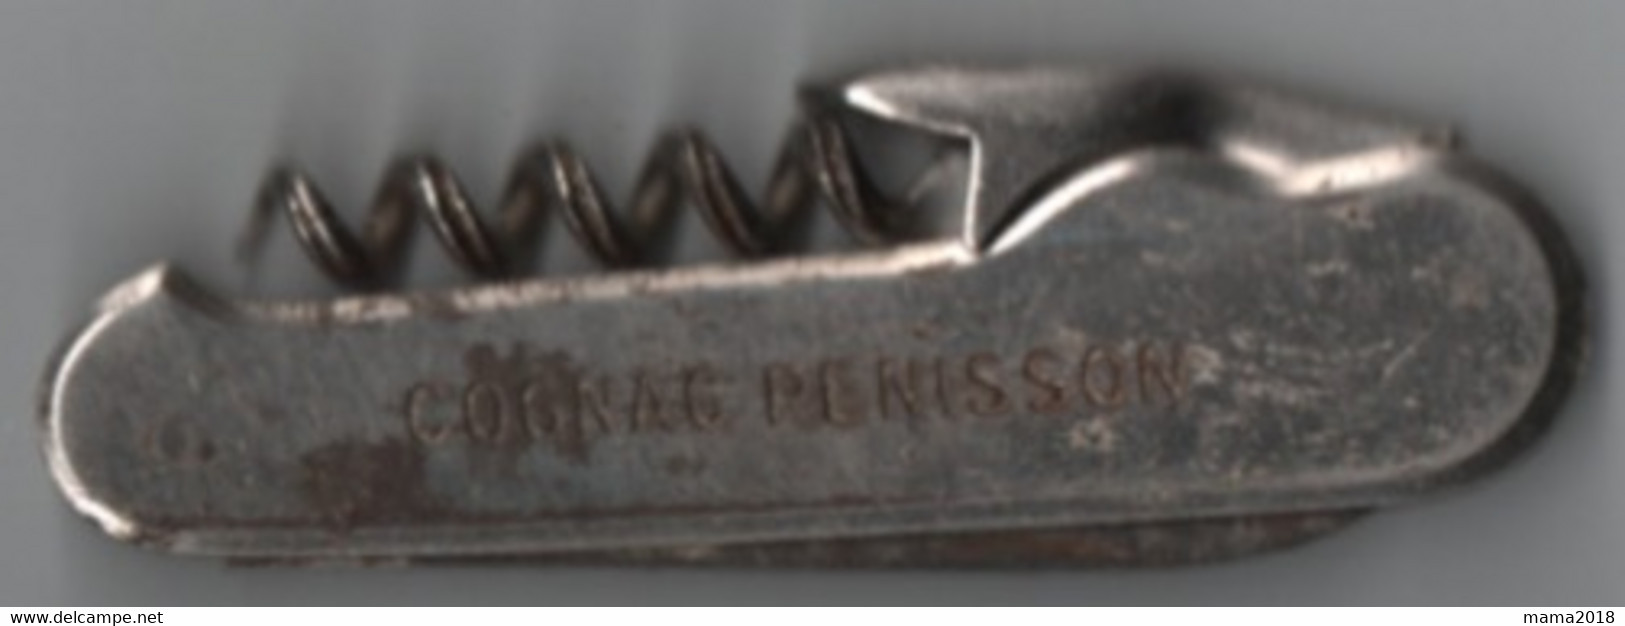 Ancien Couteau   Cognac Penisson  ( Distillerie  Du Camp De César )  9.5 Cm  Fermé - Armes Blanches